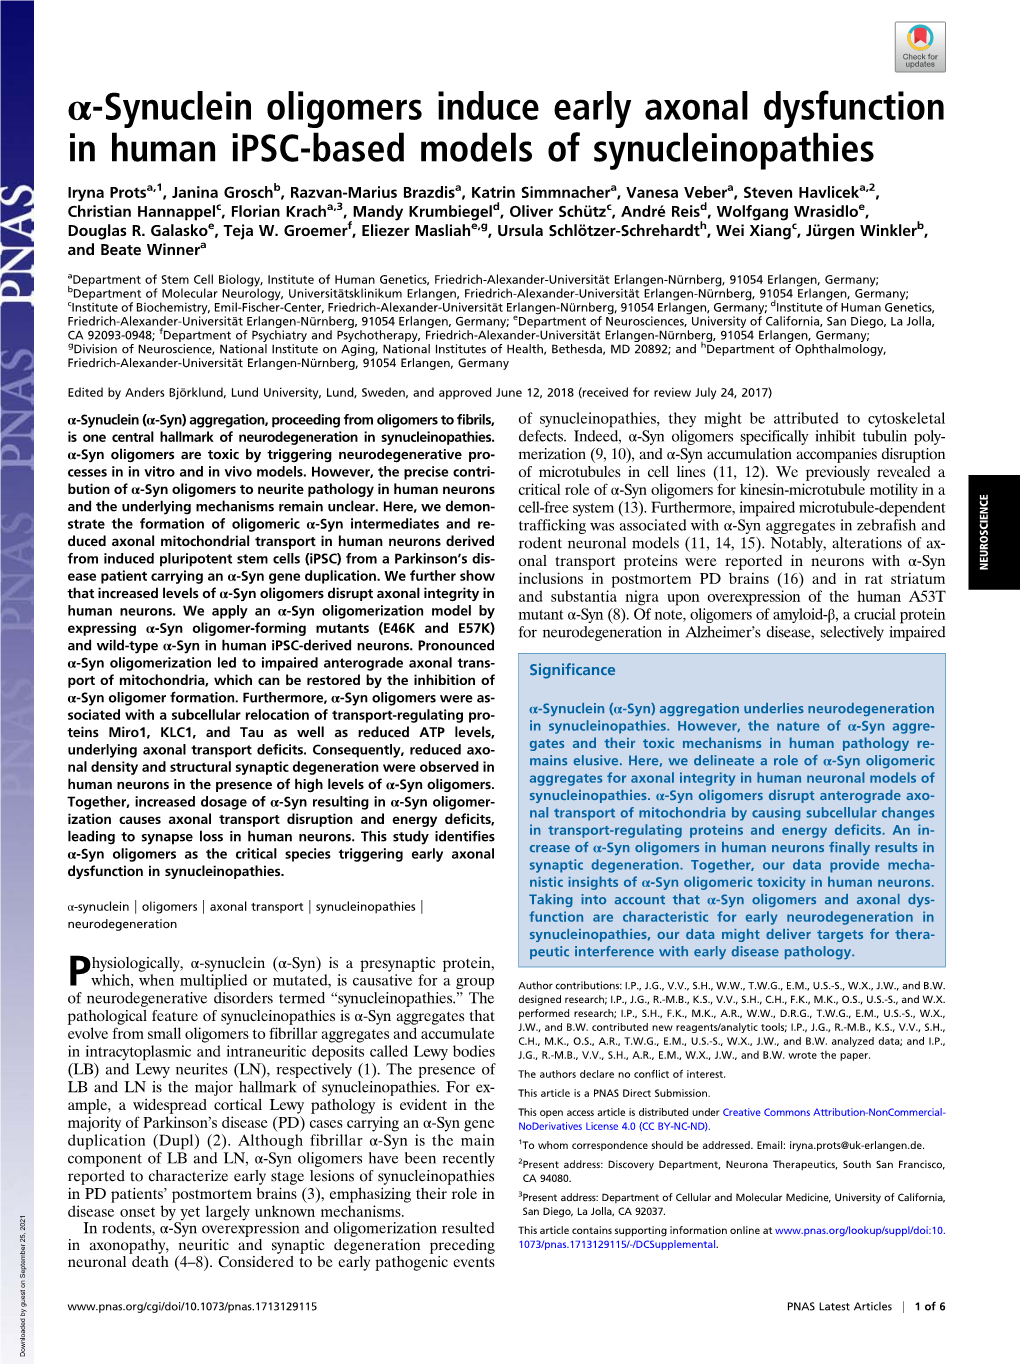 Α-Synuclein Oligomers Induce Early Axonal Dysfunction in Human Ipsc-Based Models of Synucleinopathies